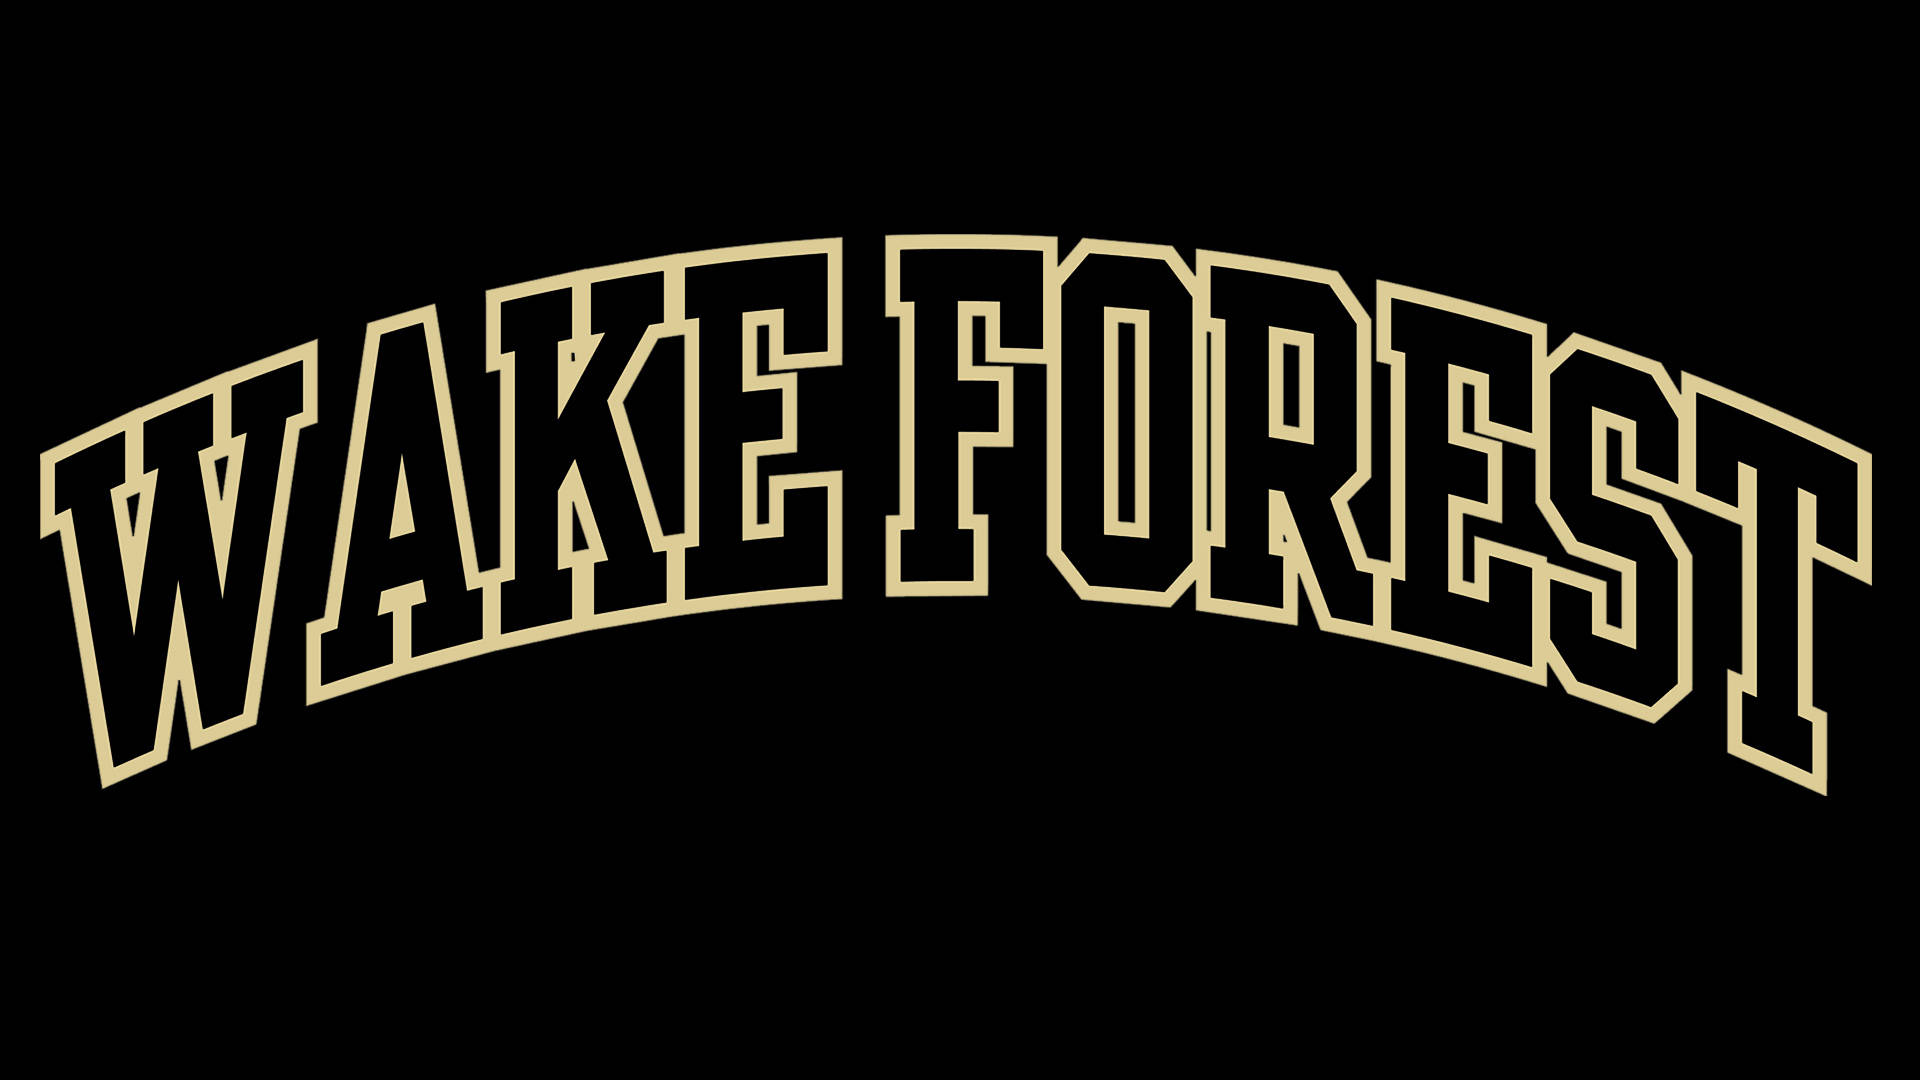 Logotipo Da Universidade Wake Forest Em Fundo Escuro Papel de Parede